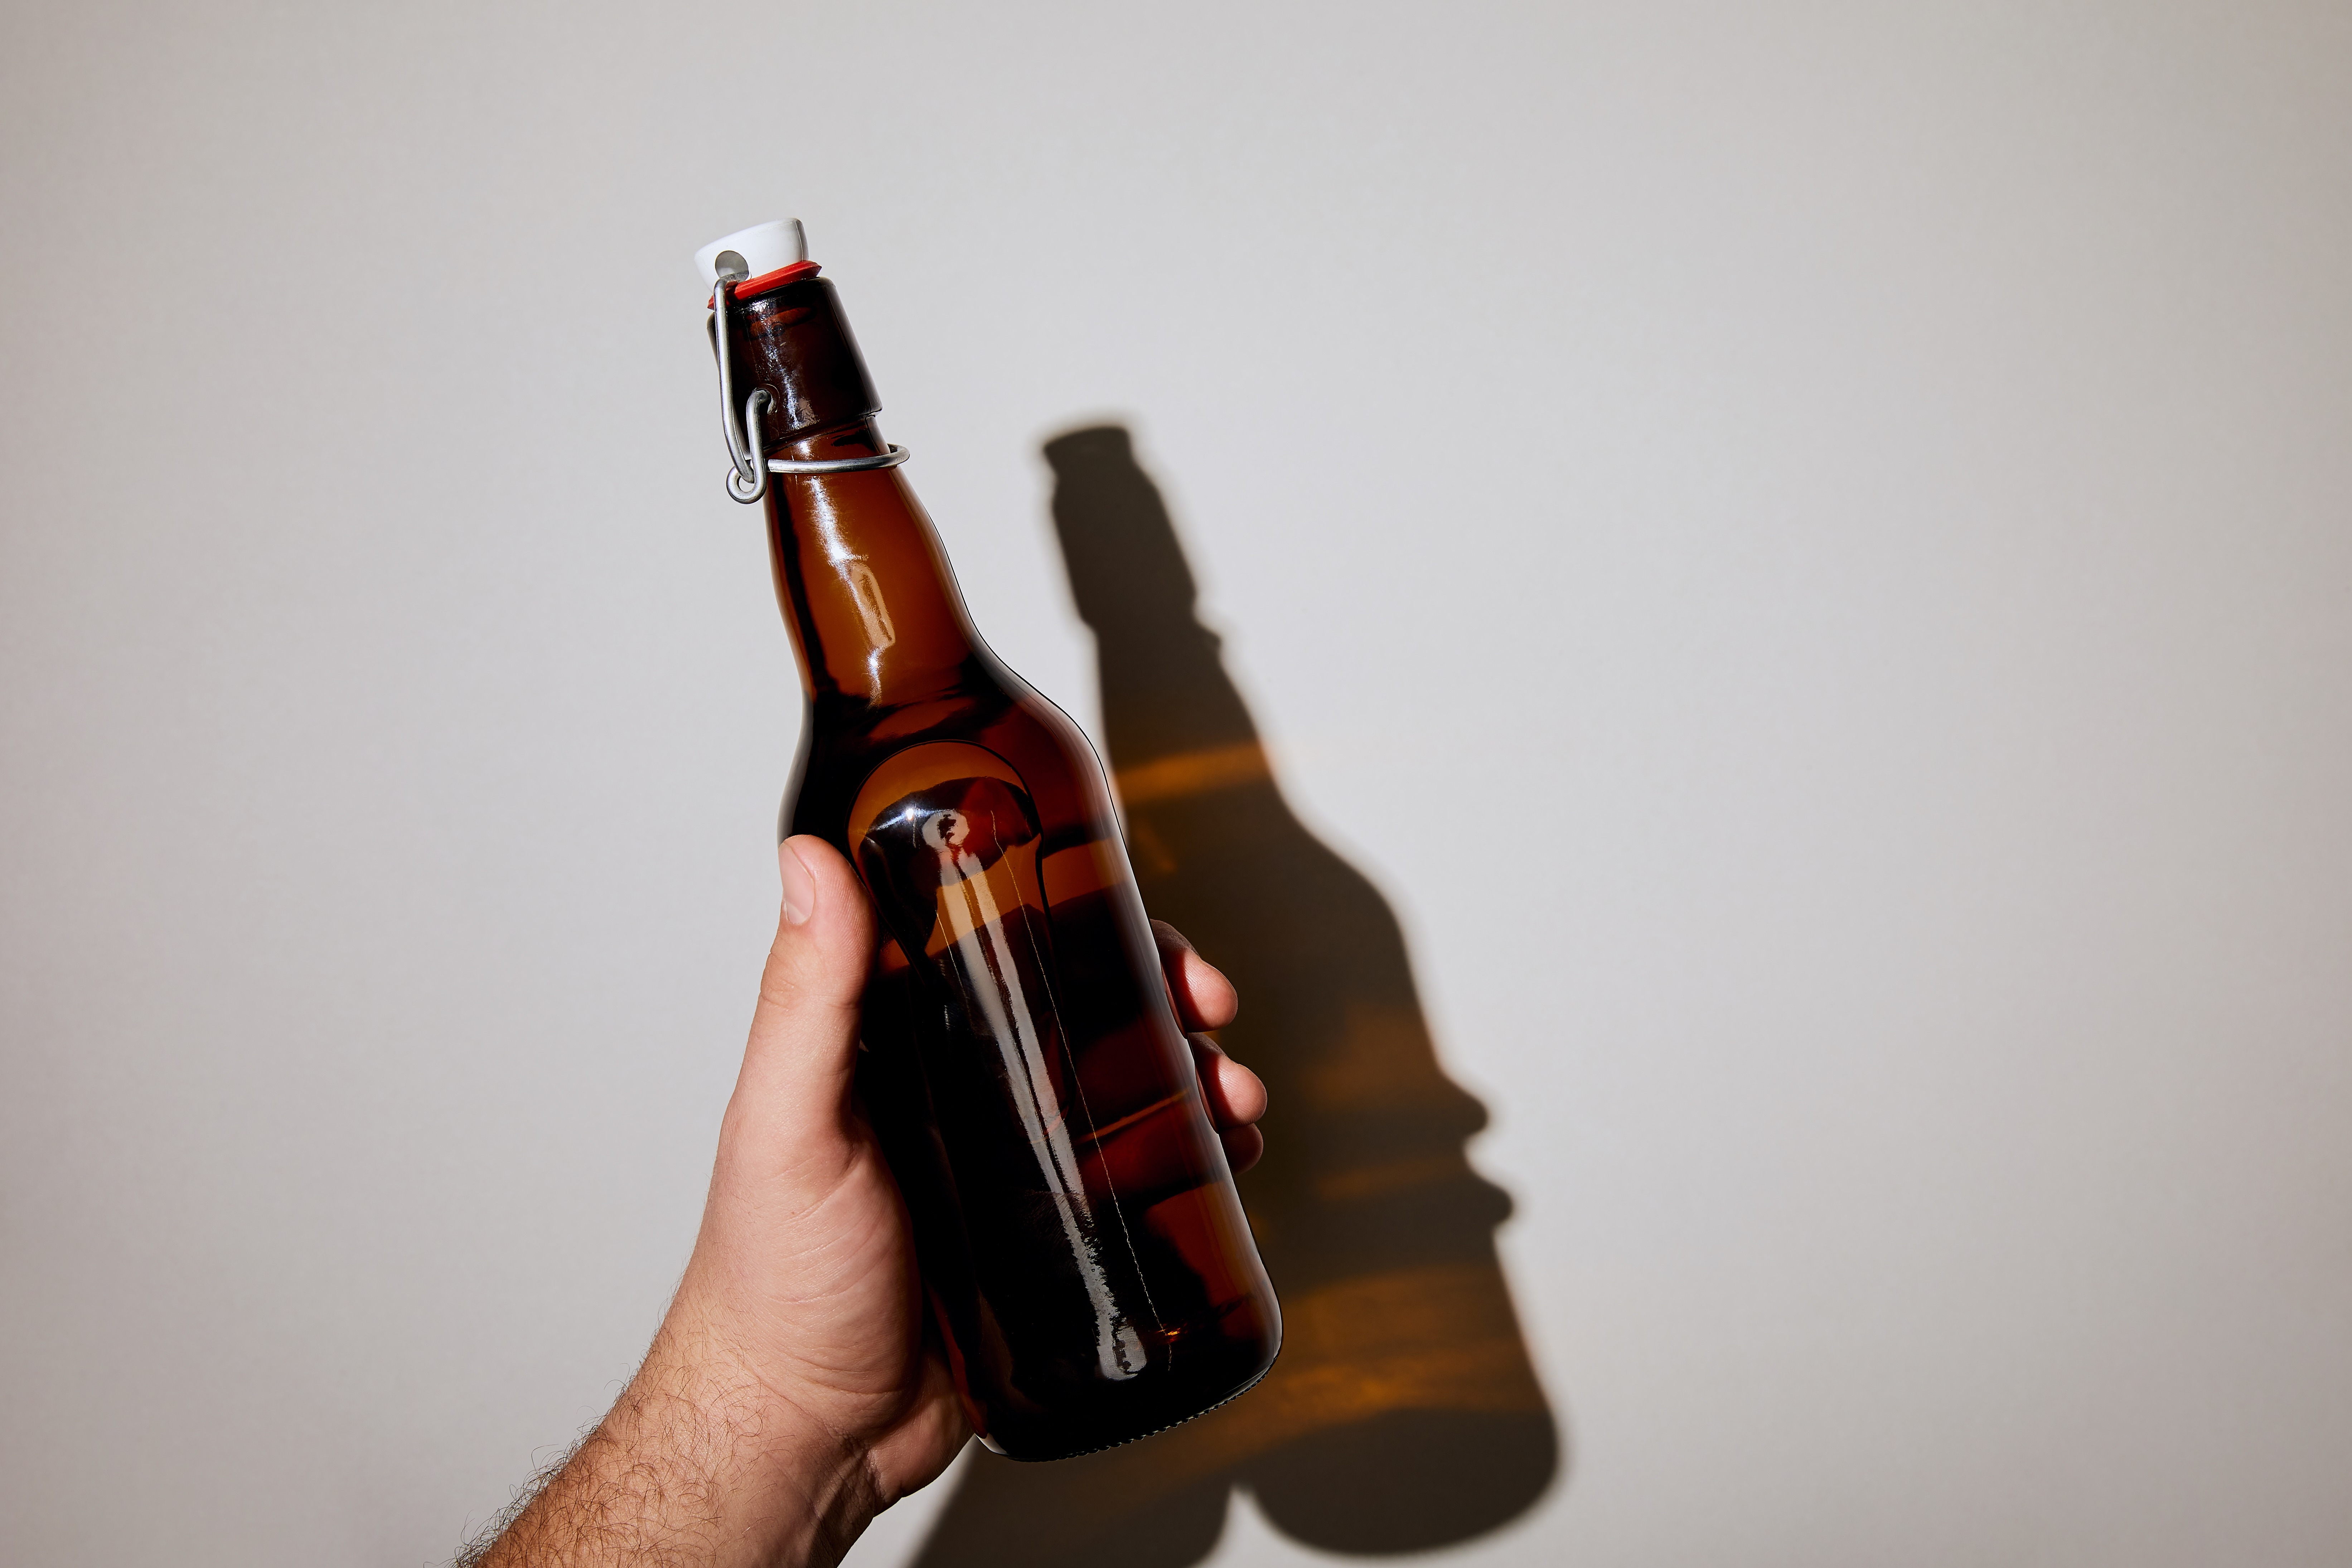 Cуррогатным алкоголем в Оренбуржье отравилось 30 человек